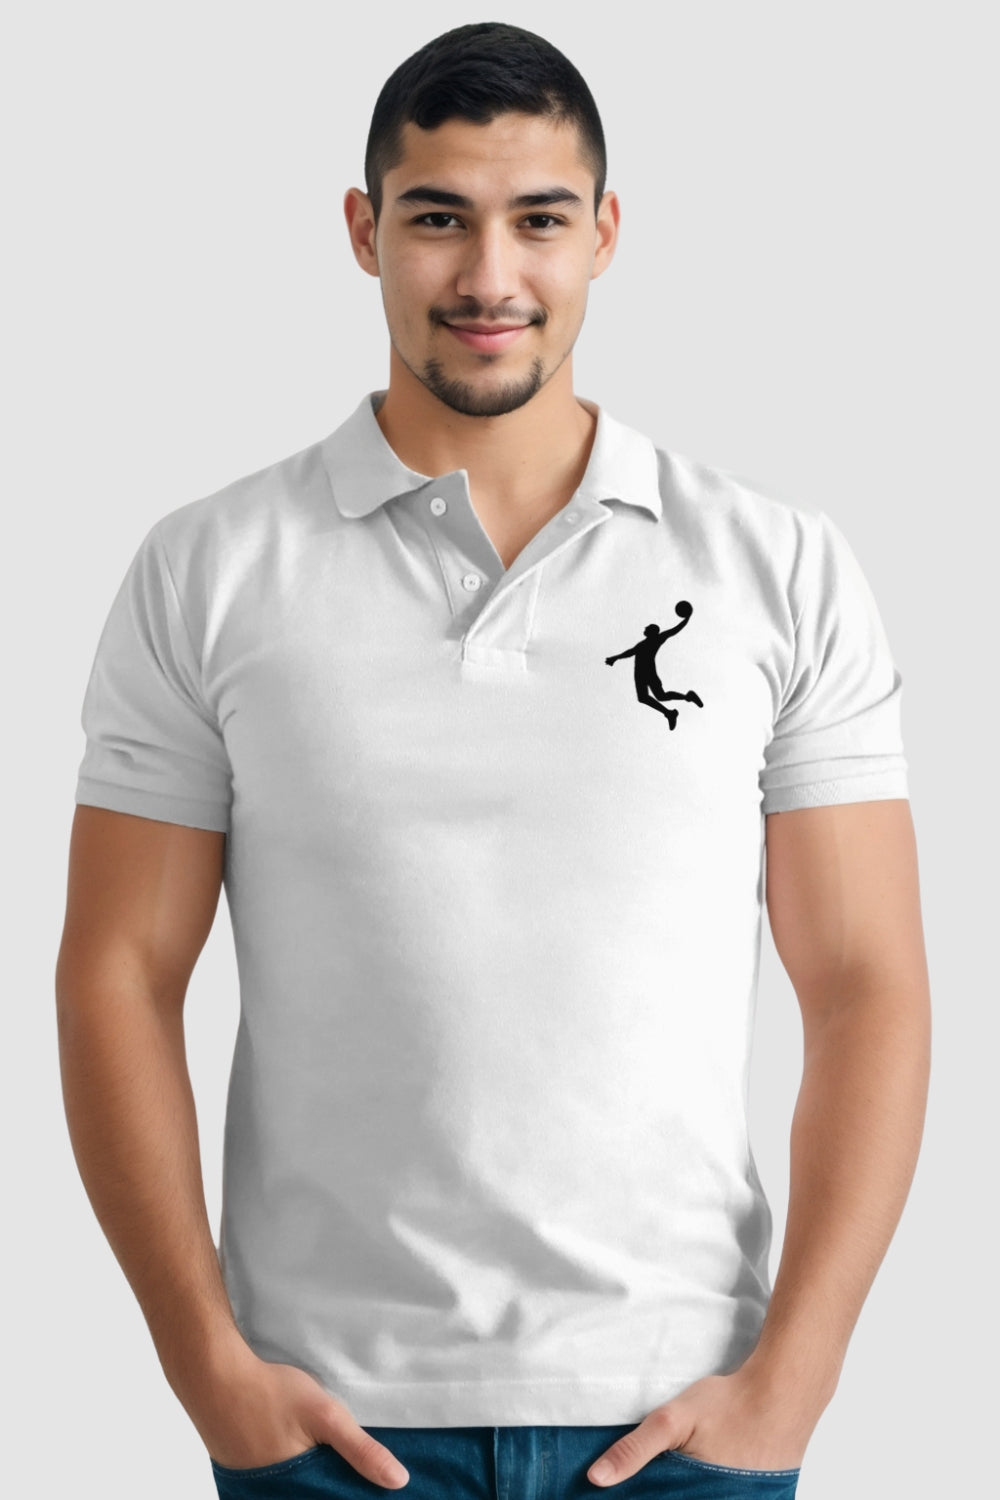 Basket Ball Pocket Printed White Polo Tshirt